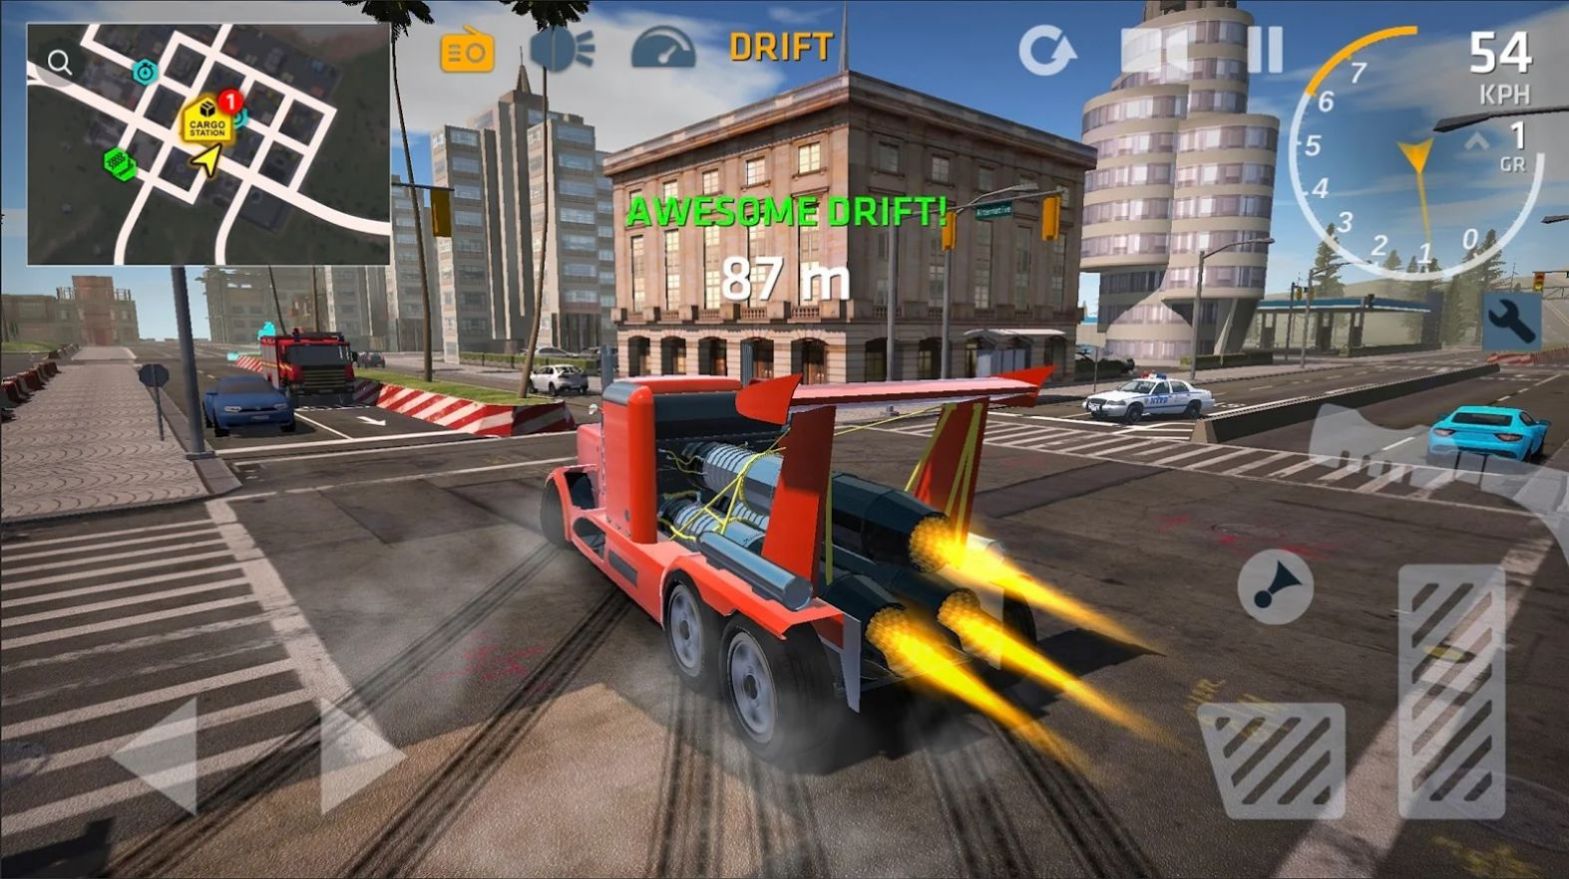 终极卡车模拟器游戏下载官方正版